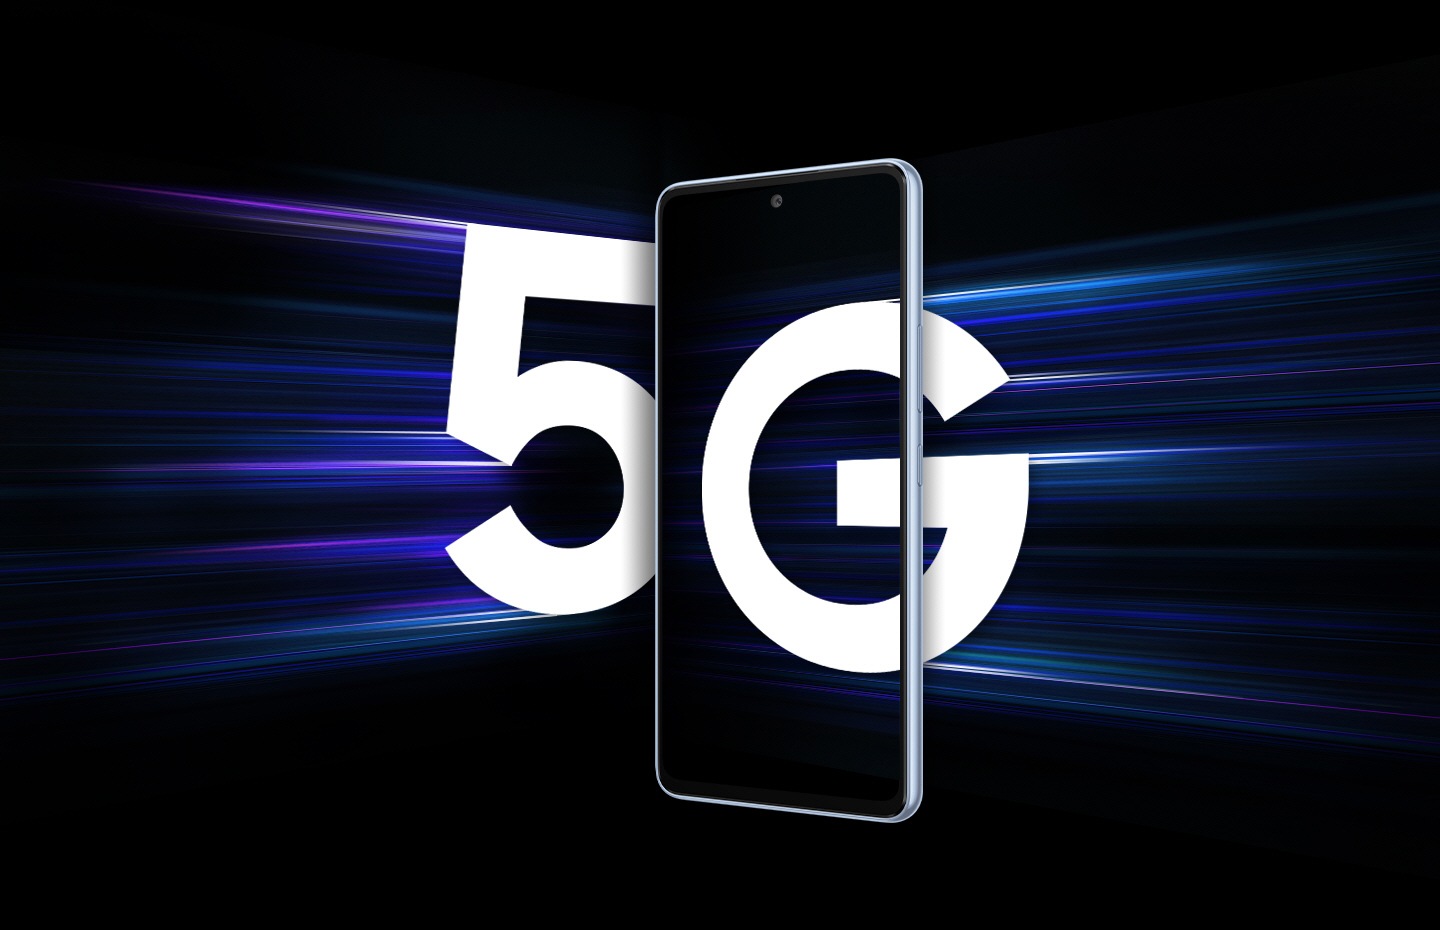 Un Galaxy A53 5G visto da davanti su sfondo nero. Da sinistra, un grande 5 bianco si avvicina allo smartphone seguito da fasci di luce che dimostrano la velocità con cui sta arrivando. Da destra, una grande G bianca entra parzialmente nello schermo dello smartphone. 